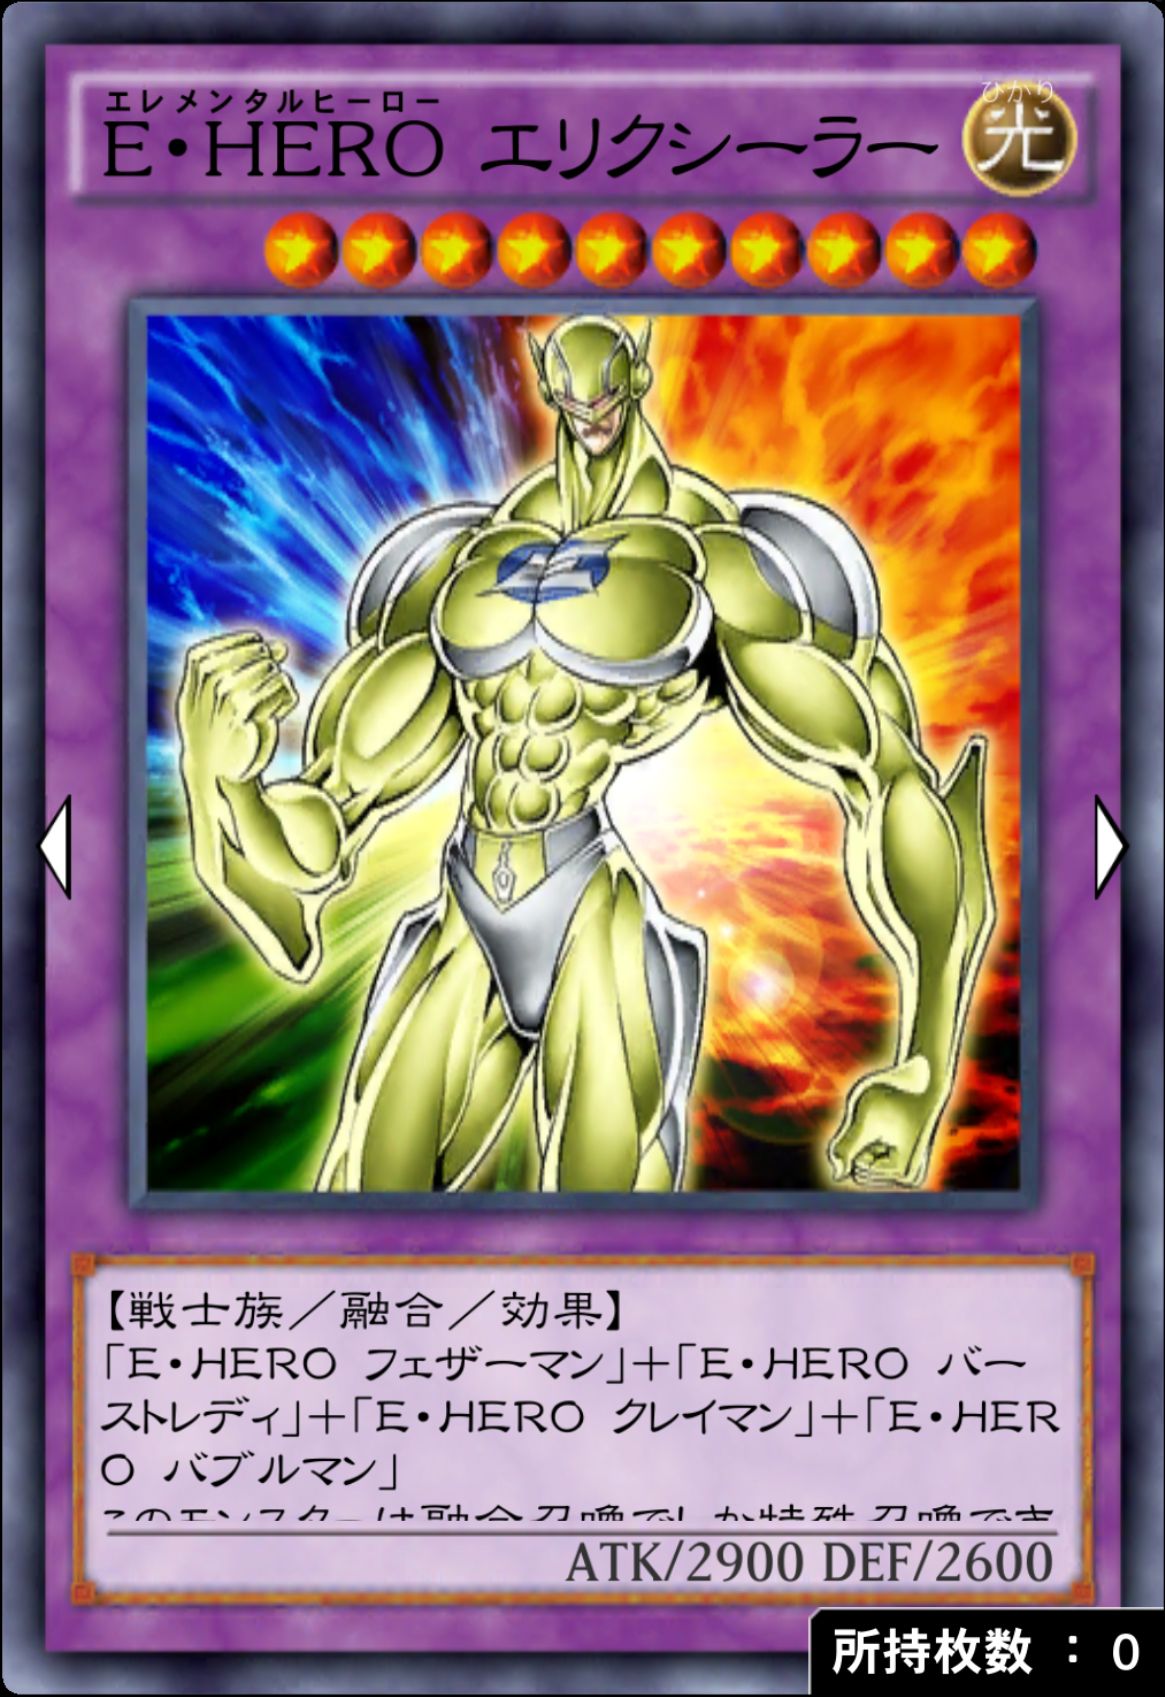 E・HERO エリクシーラーのカード画像